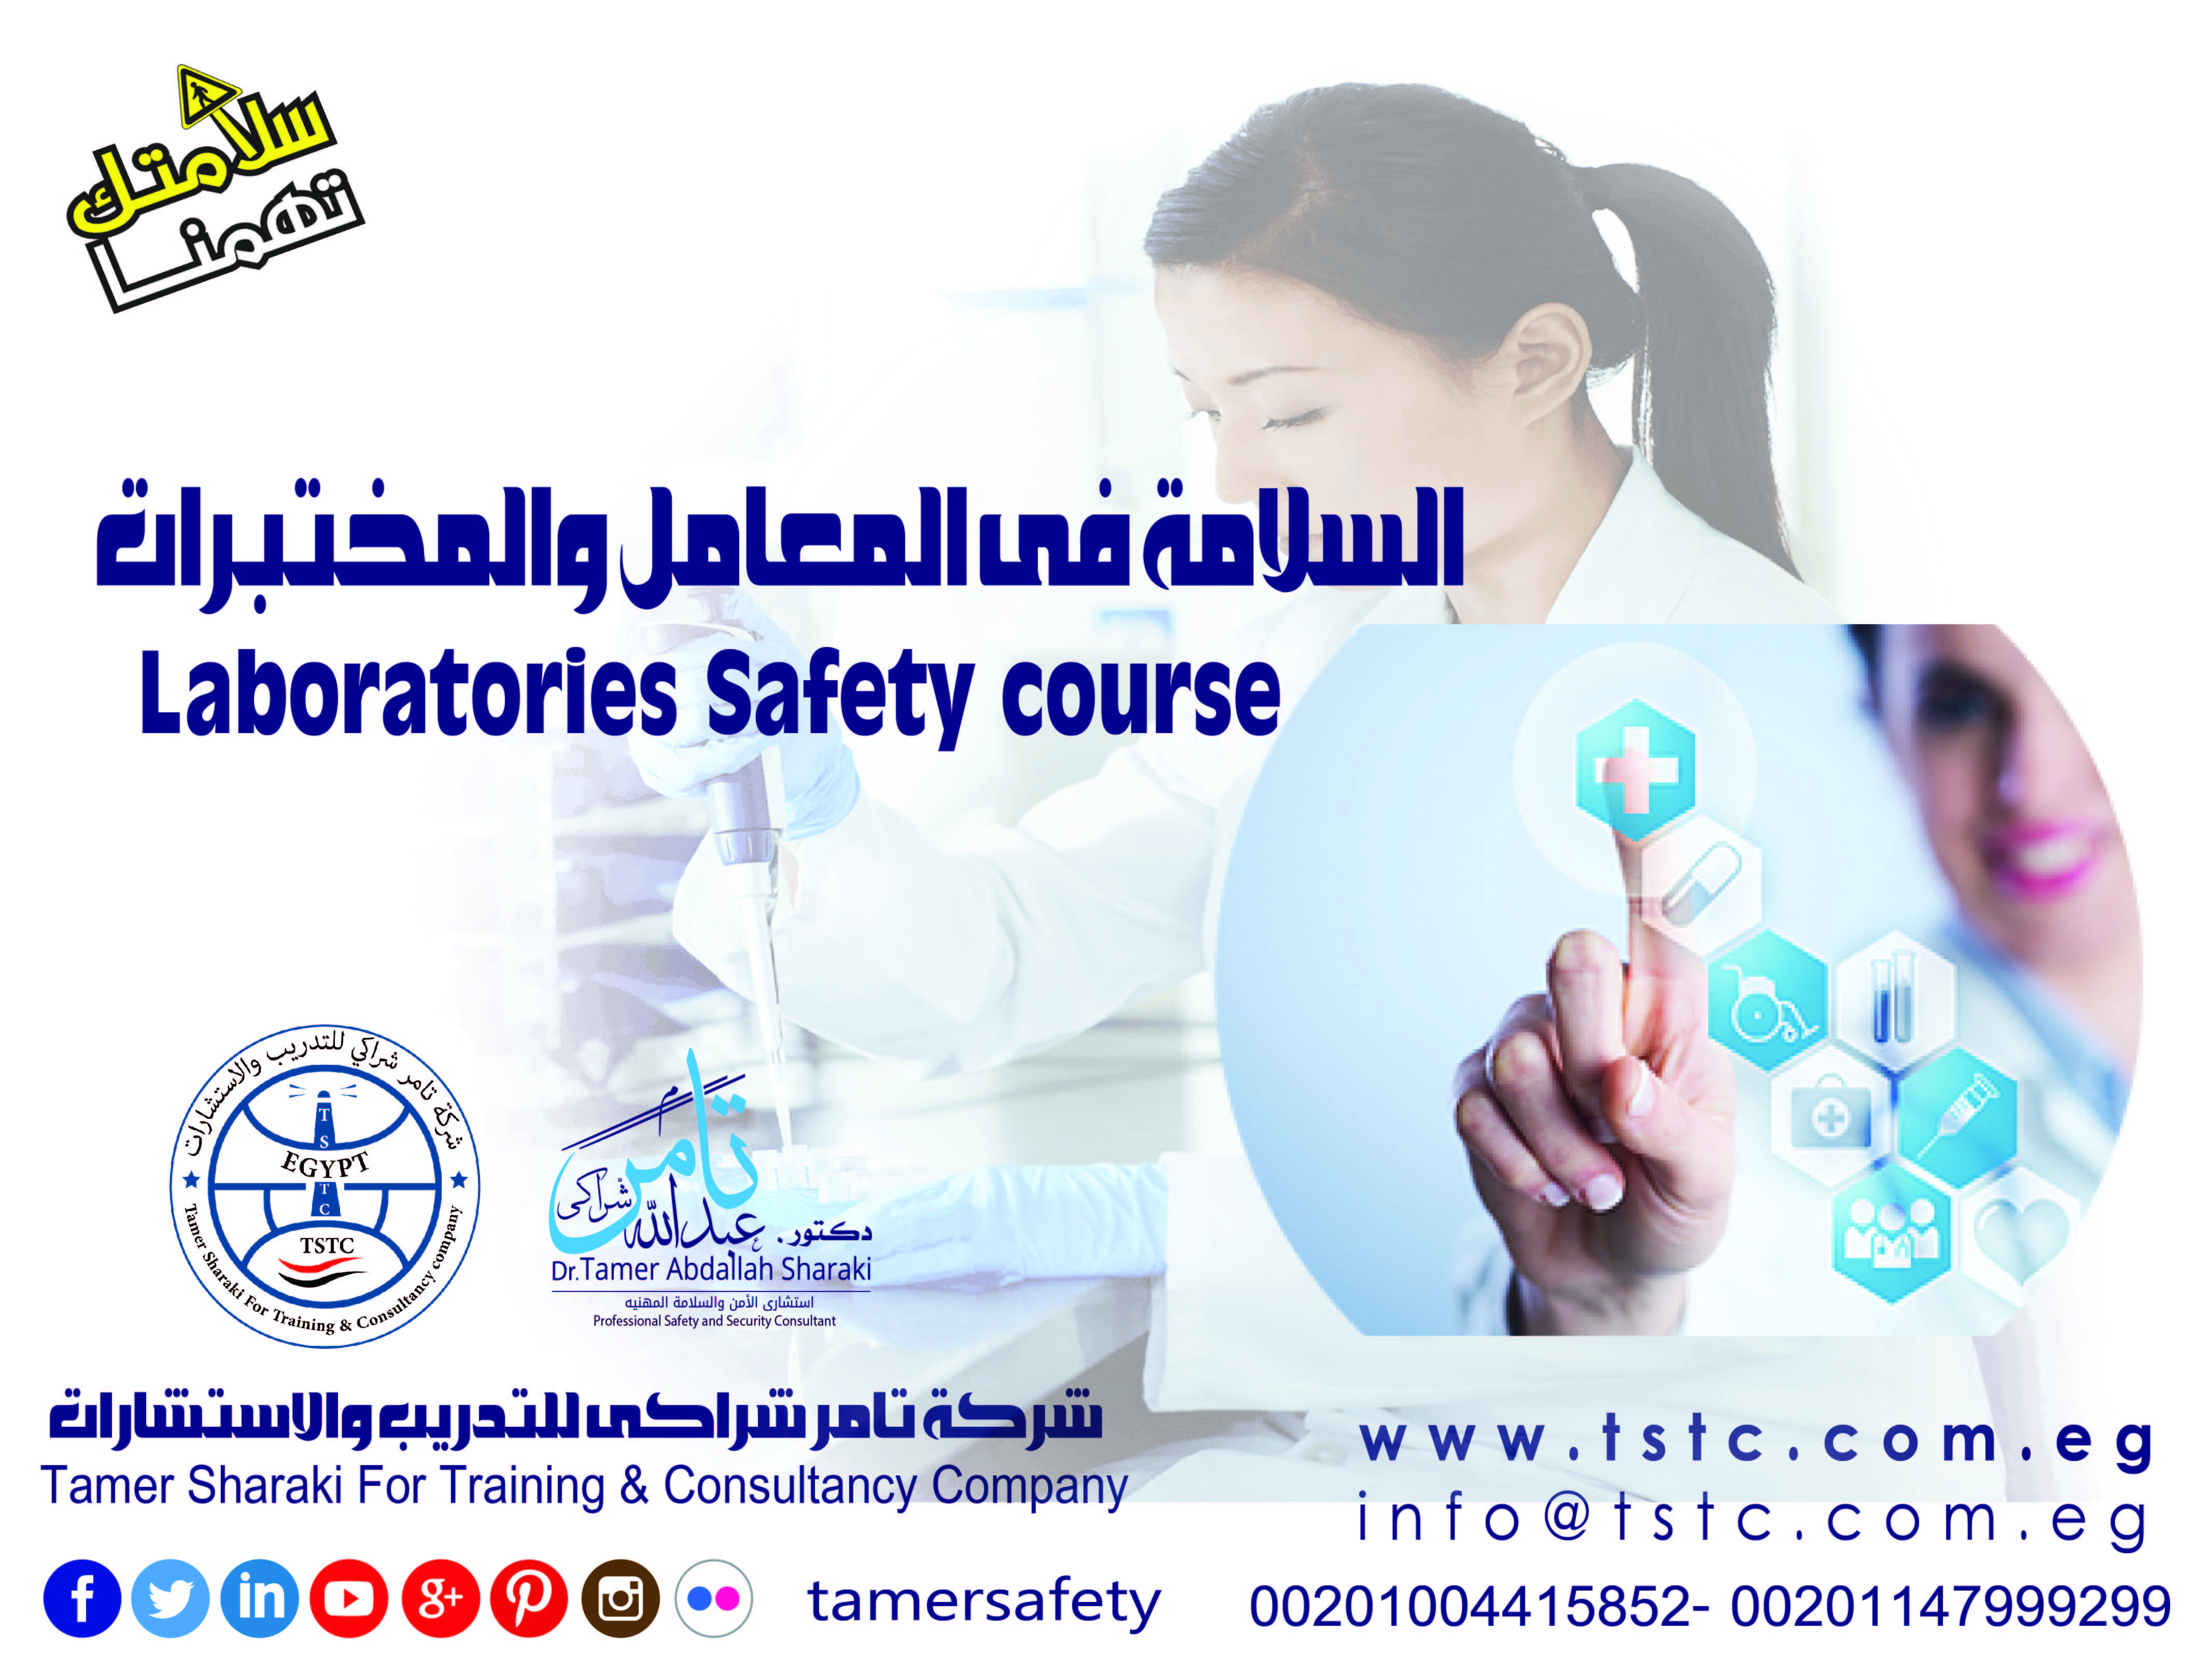 دورة السلامة فى المعامل والمختبرات Laboratories Safety course